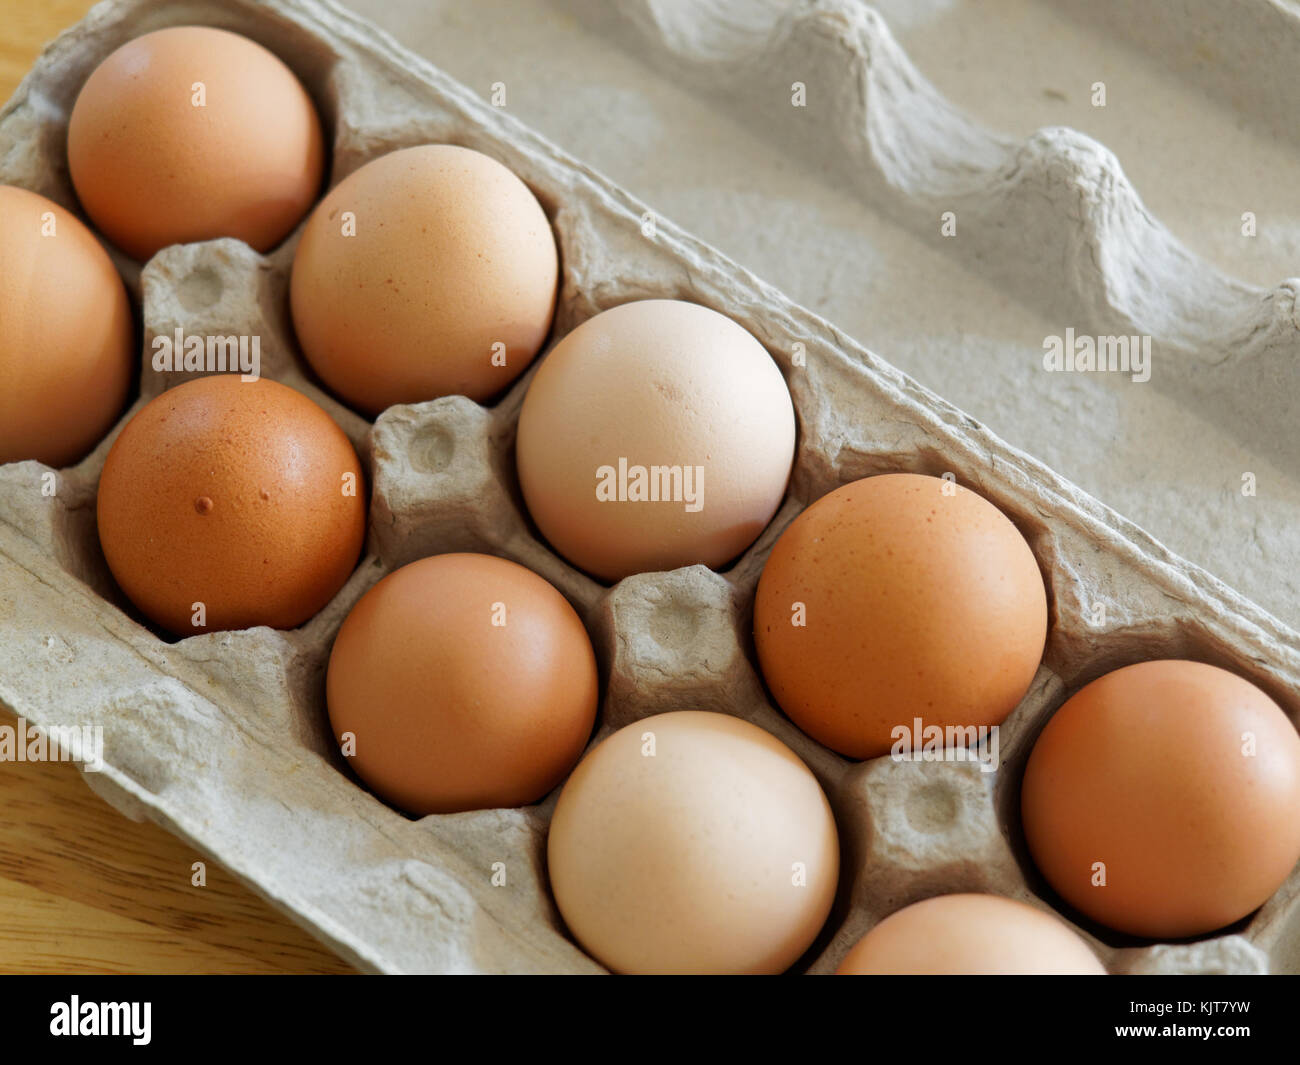 Quebec,Canada. Carton of fresh brown eggs Stock Photo